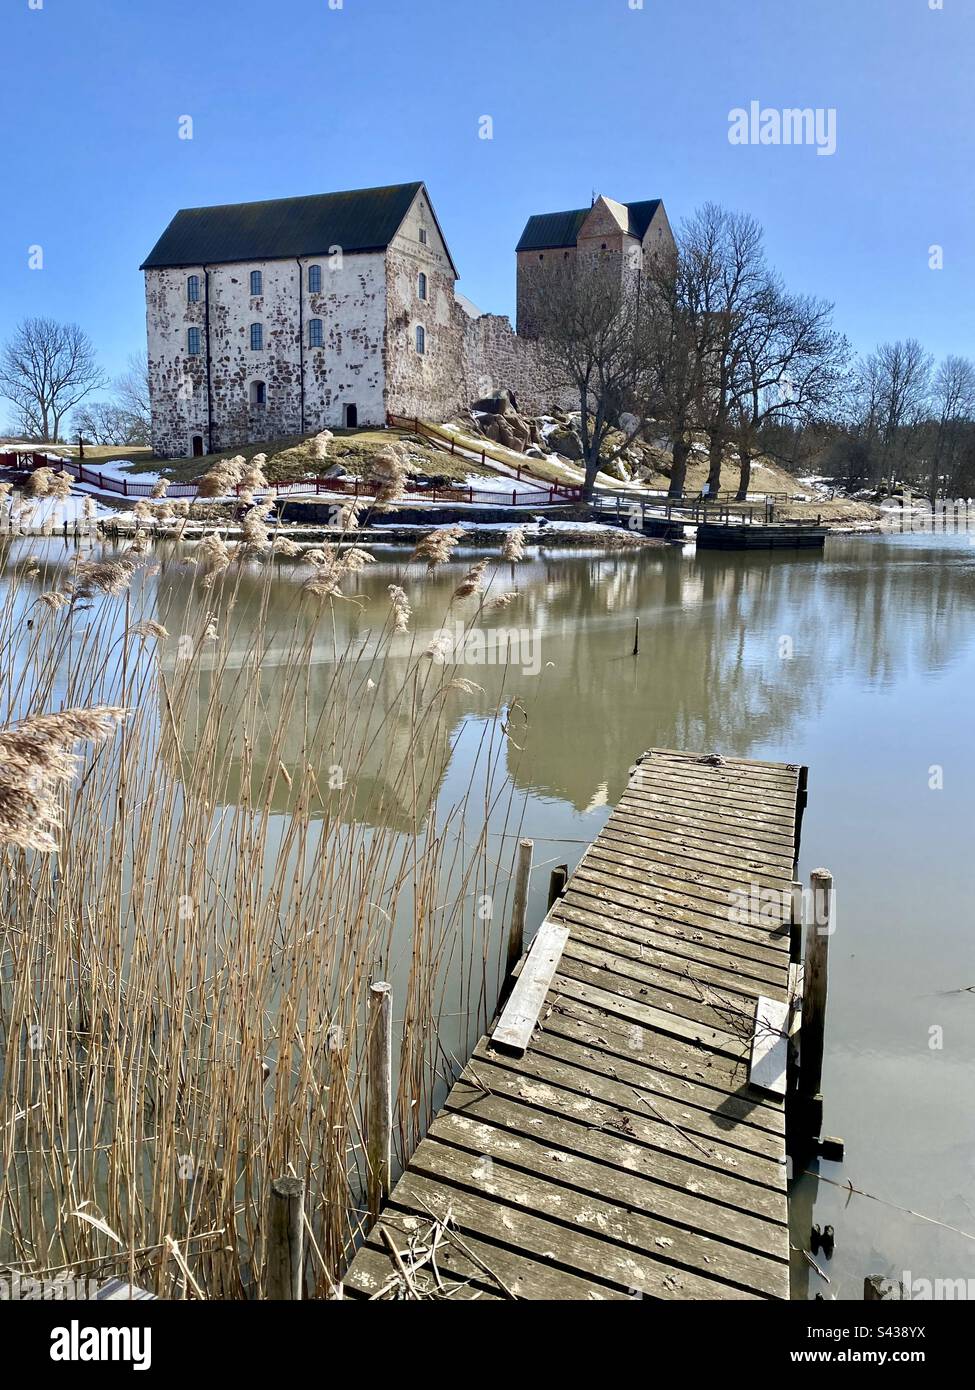 Il bellissimo castello antico di Kastelholm nell'arcipelago delle isole Åland, nella regione del Mar Baltico in Finlandia, con l'inverno che si trasforma in primavera. Vista su un molo in decadenza su un lago marino interno. Foto Stock